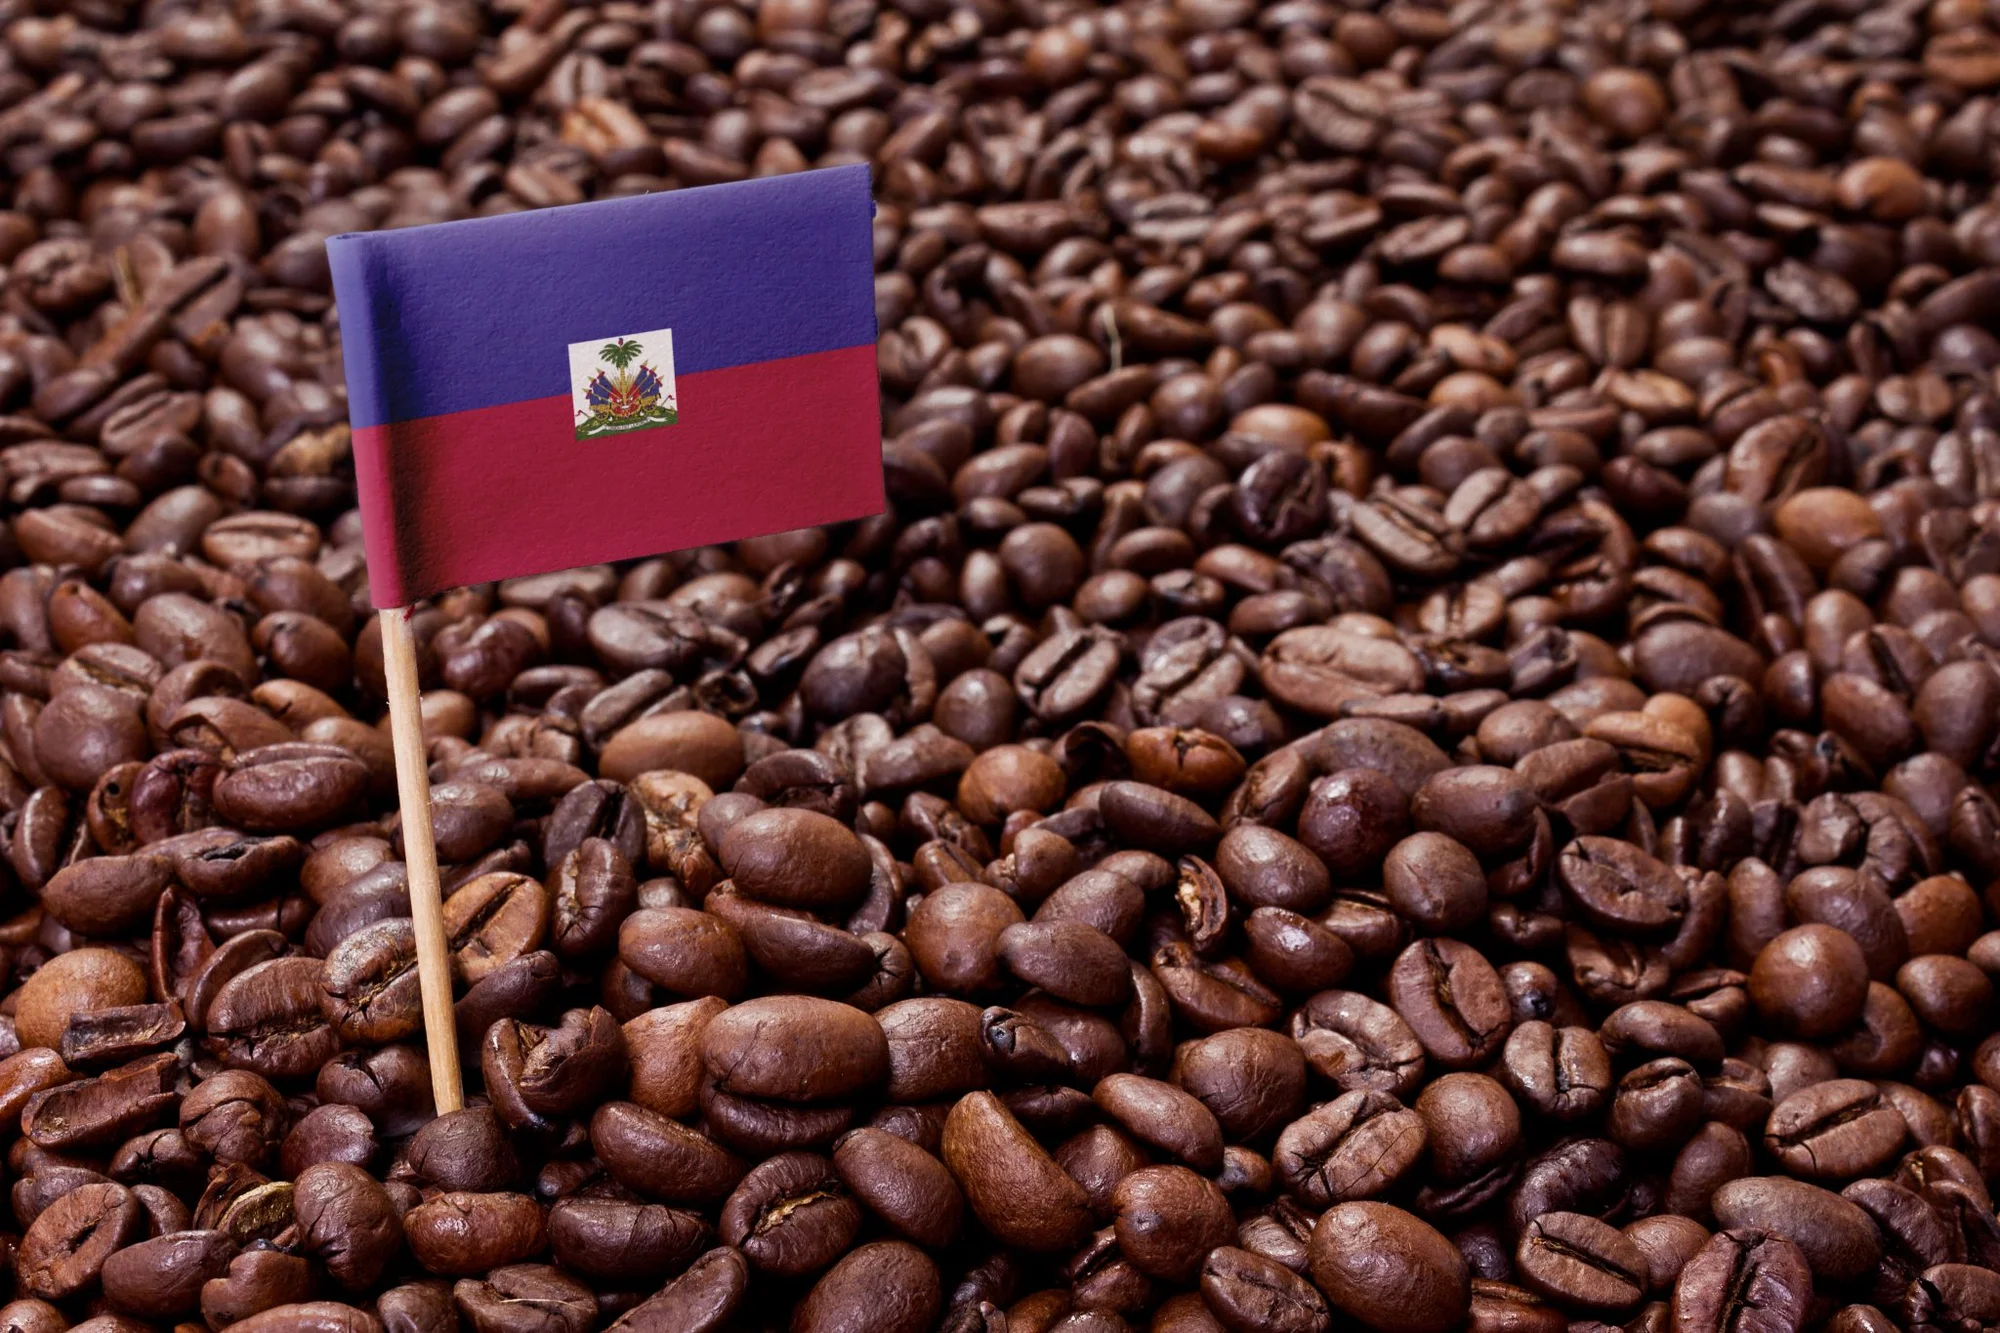 haitian blue coffee